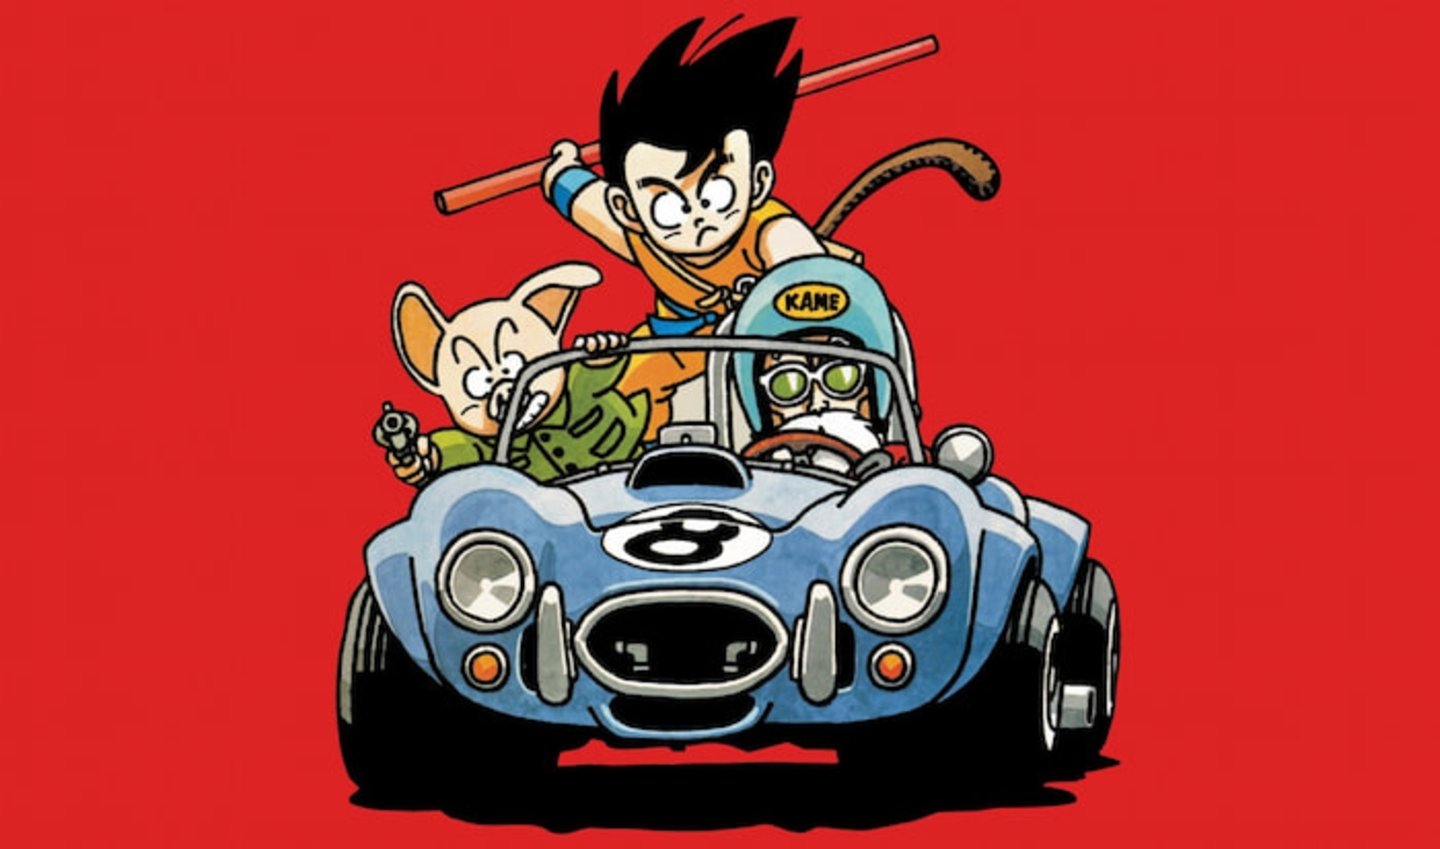 Una ilustración oficial convierte a Goku en un piloto de carreras de Fórmula 1